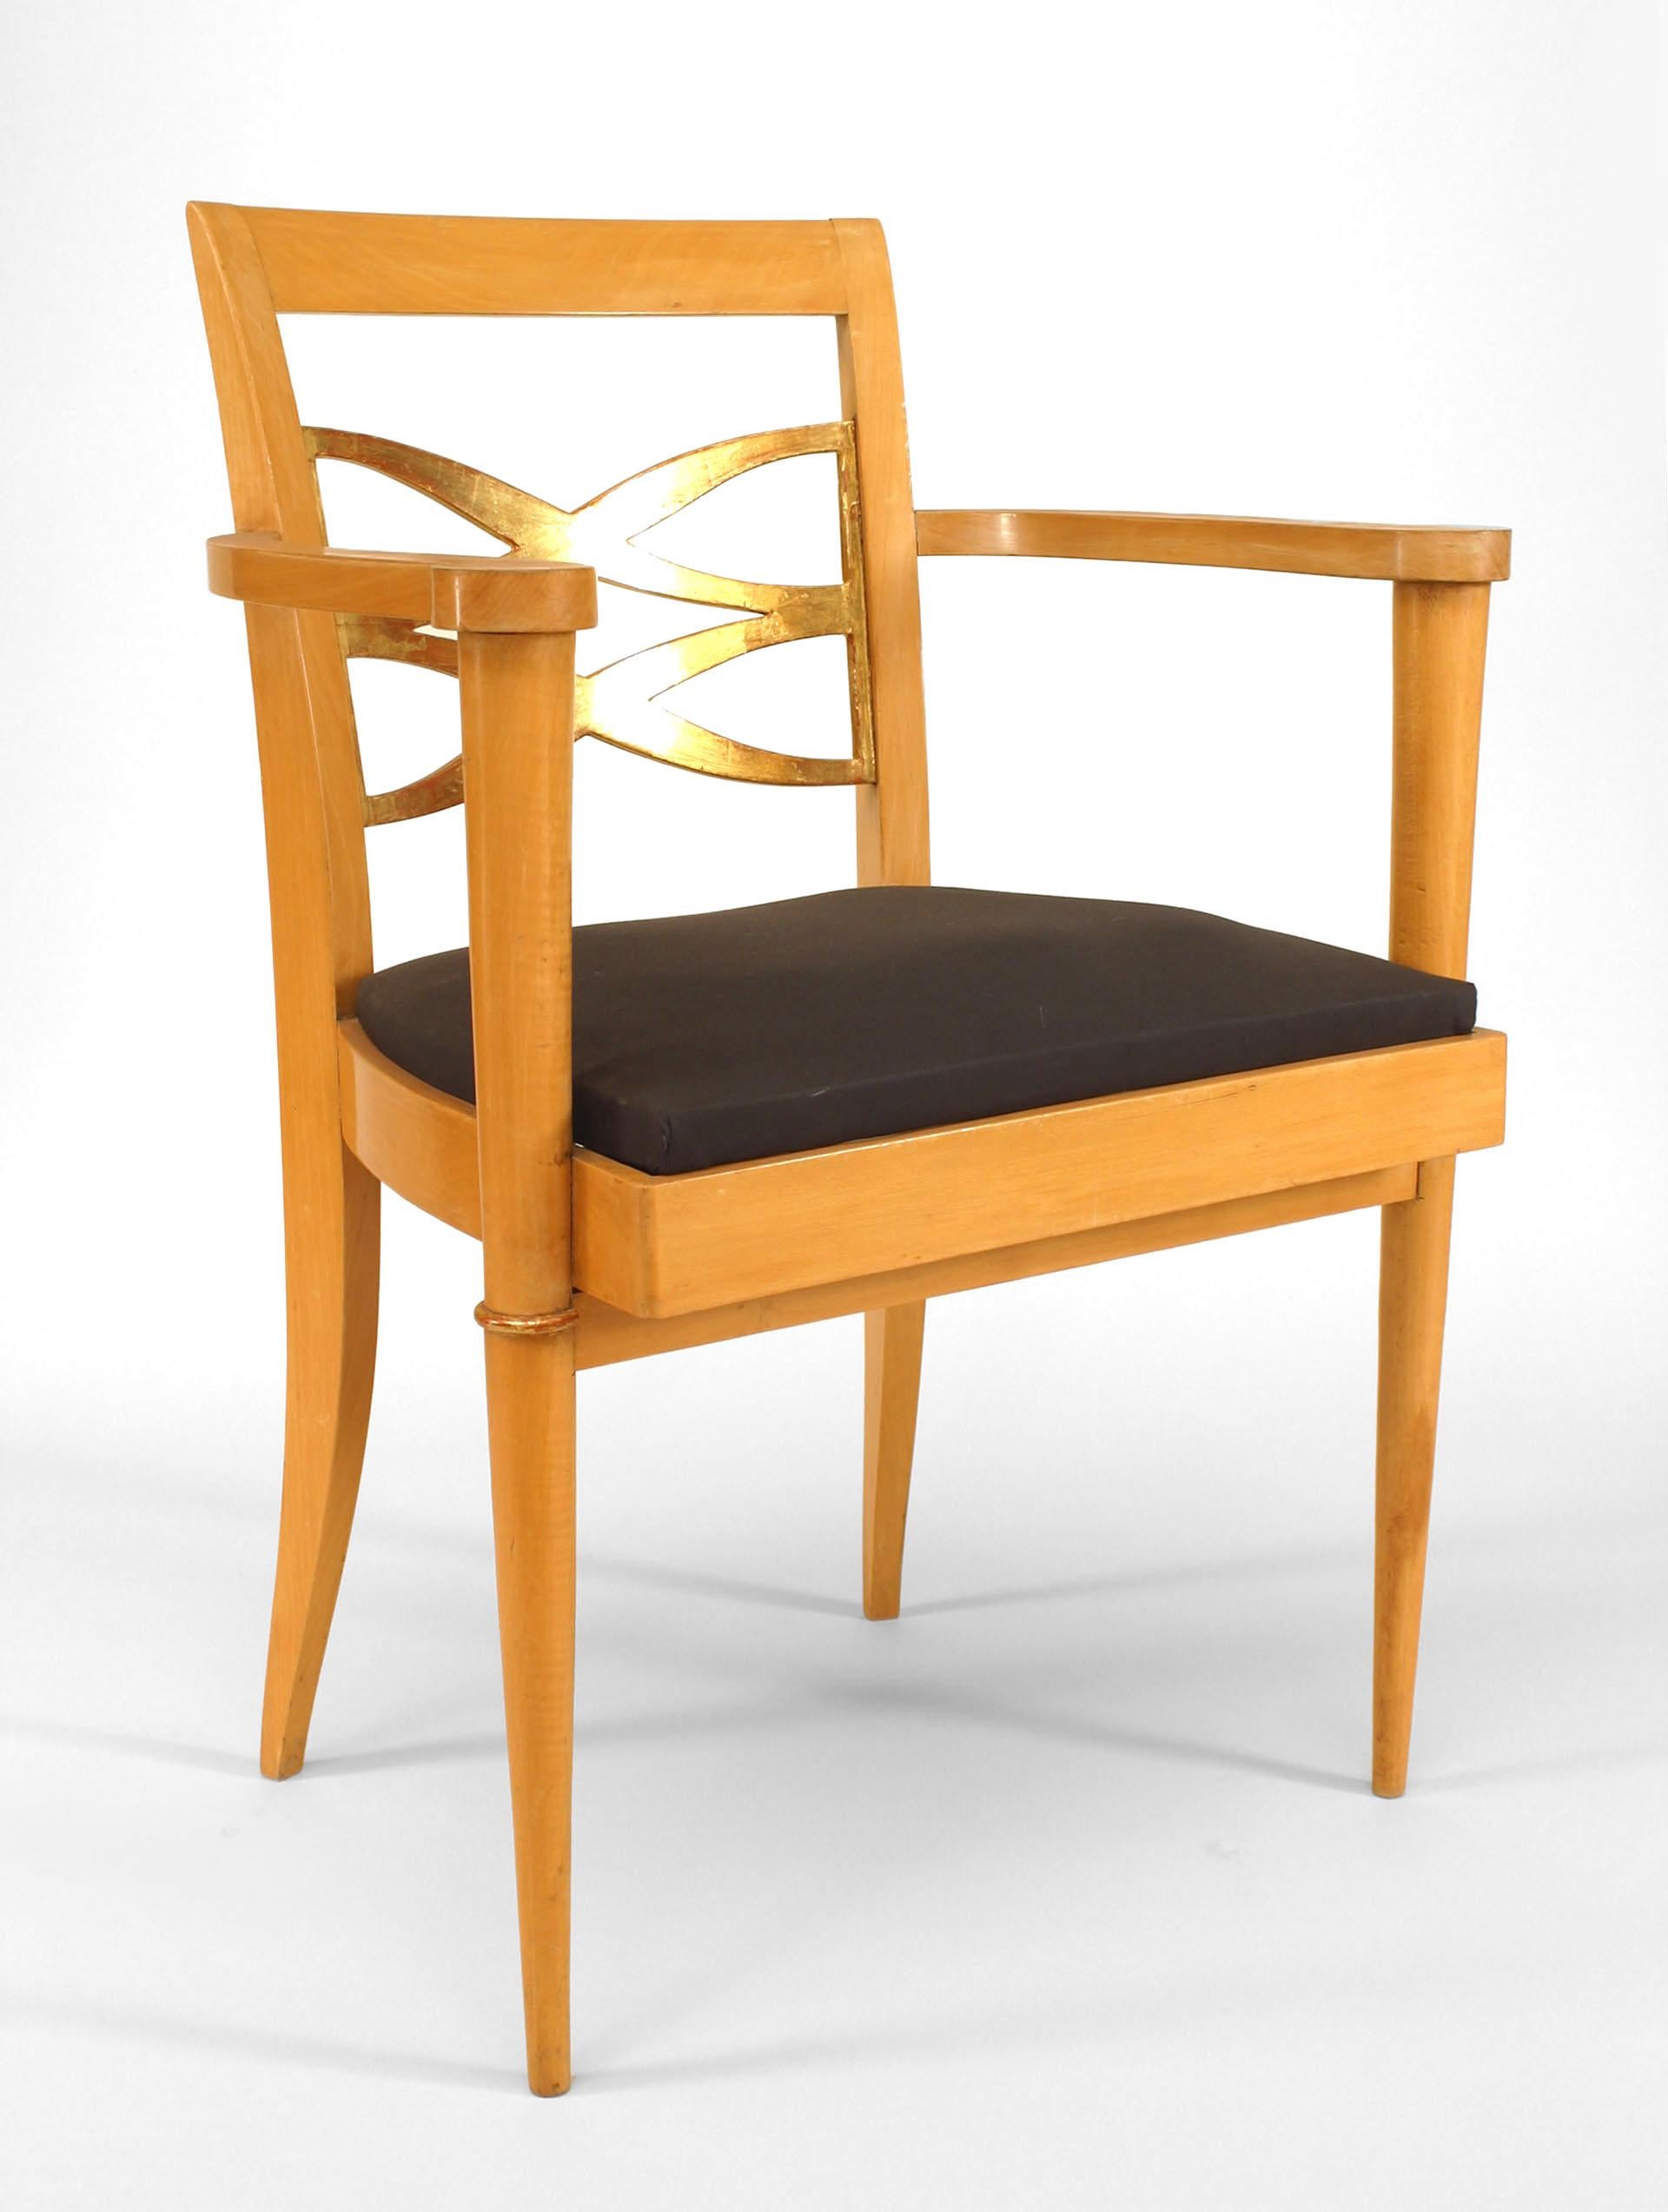 Paar französische Ahornsessel aus den 1940er Jahren mit offenem Design, vergoldeter Rückenlehne und Sitzfläche (att: BATISTIN SPADE) (ein 3. Einzelsessel ist ebenfalls erhältlich 058792A)
